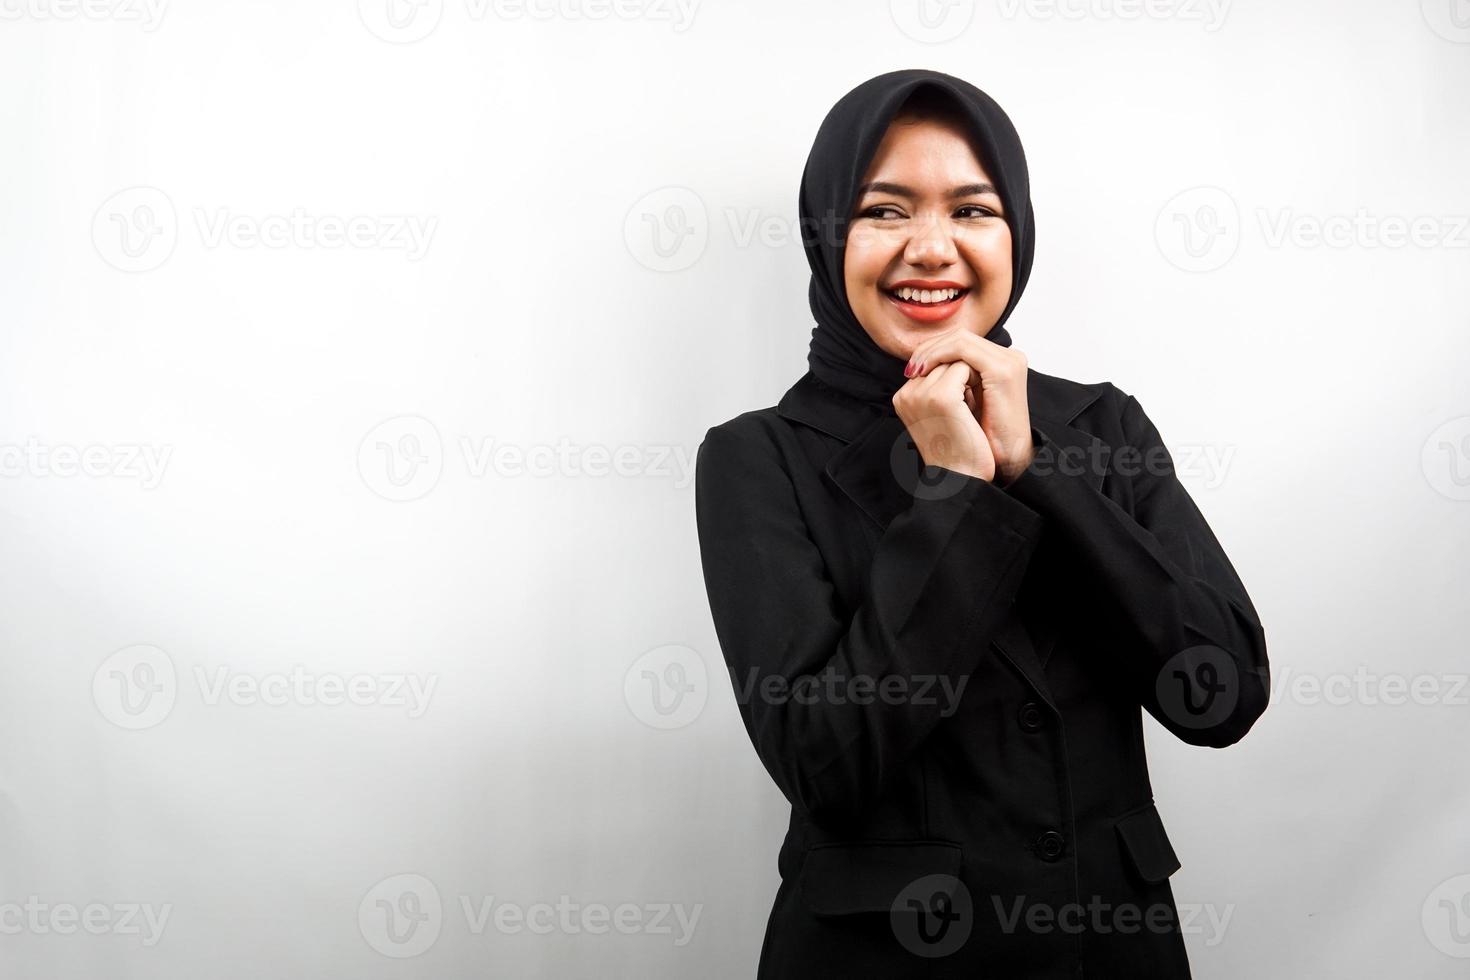 belle jeune femme d'affaires musulmane asiatique confiante et joyeuse à l'espace vide présentant quelque chose, isolé sur fond blanc photo